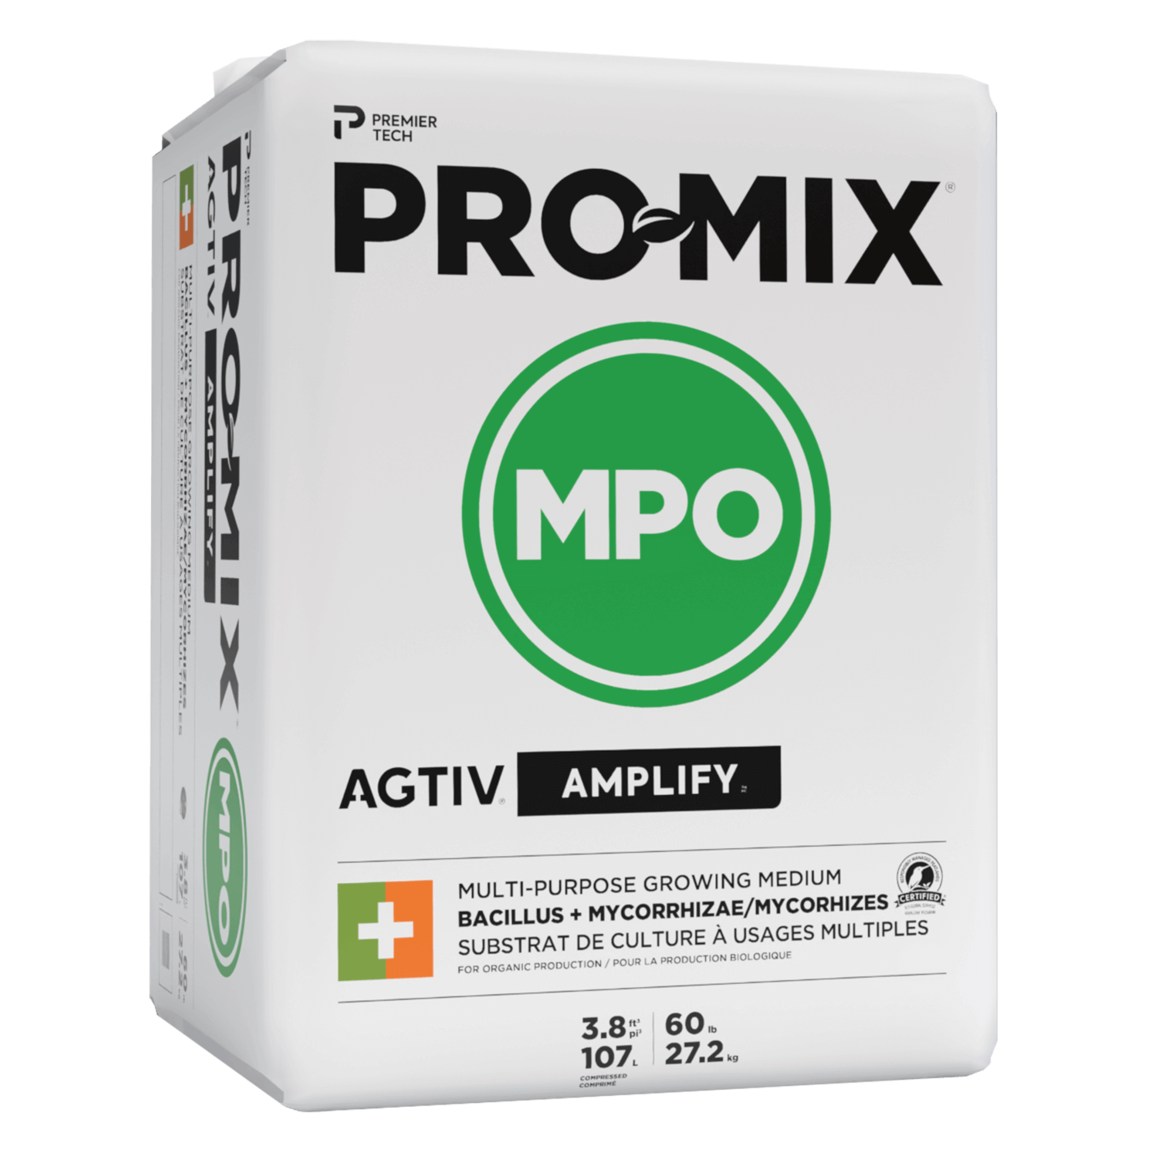 PRO-MIX MPO AGTIV AMPLIFY 3.8 cu.ft